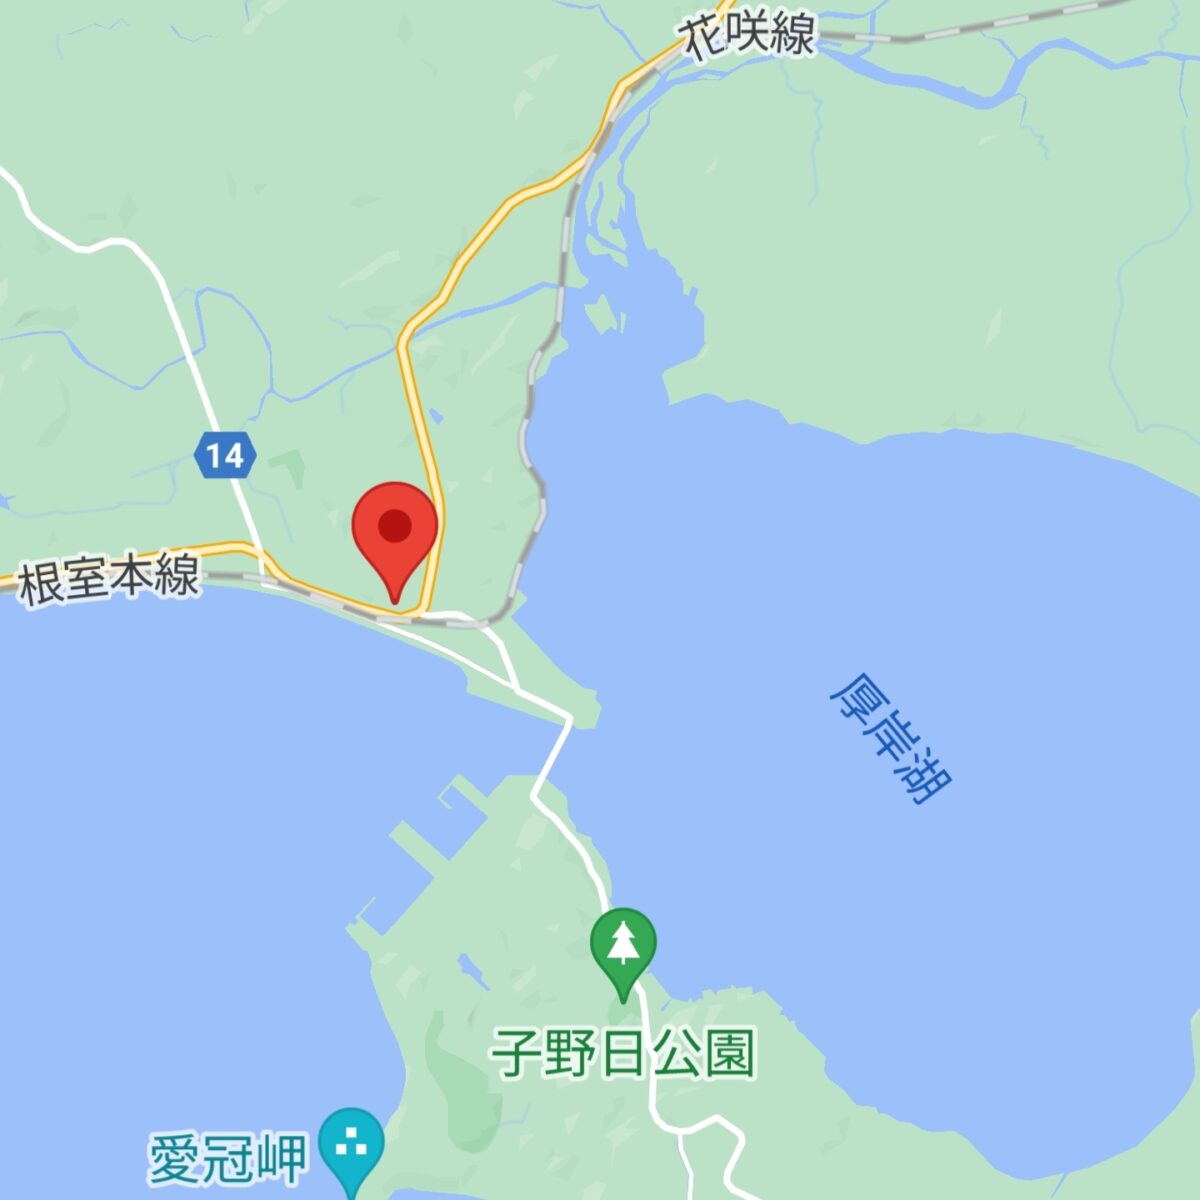 厚岸真龍神社の位置関係がわかる道東地図